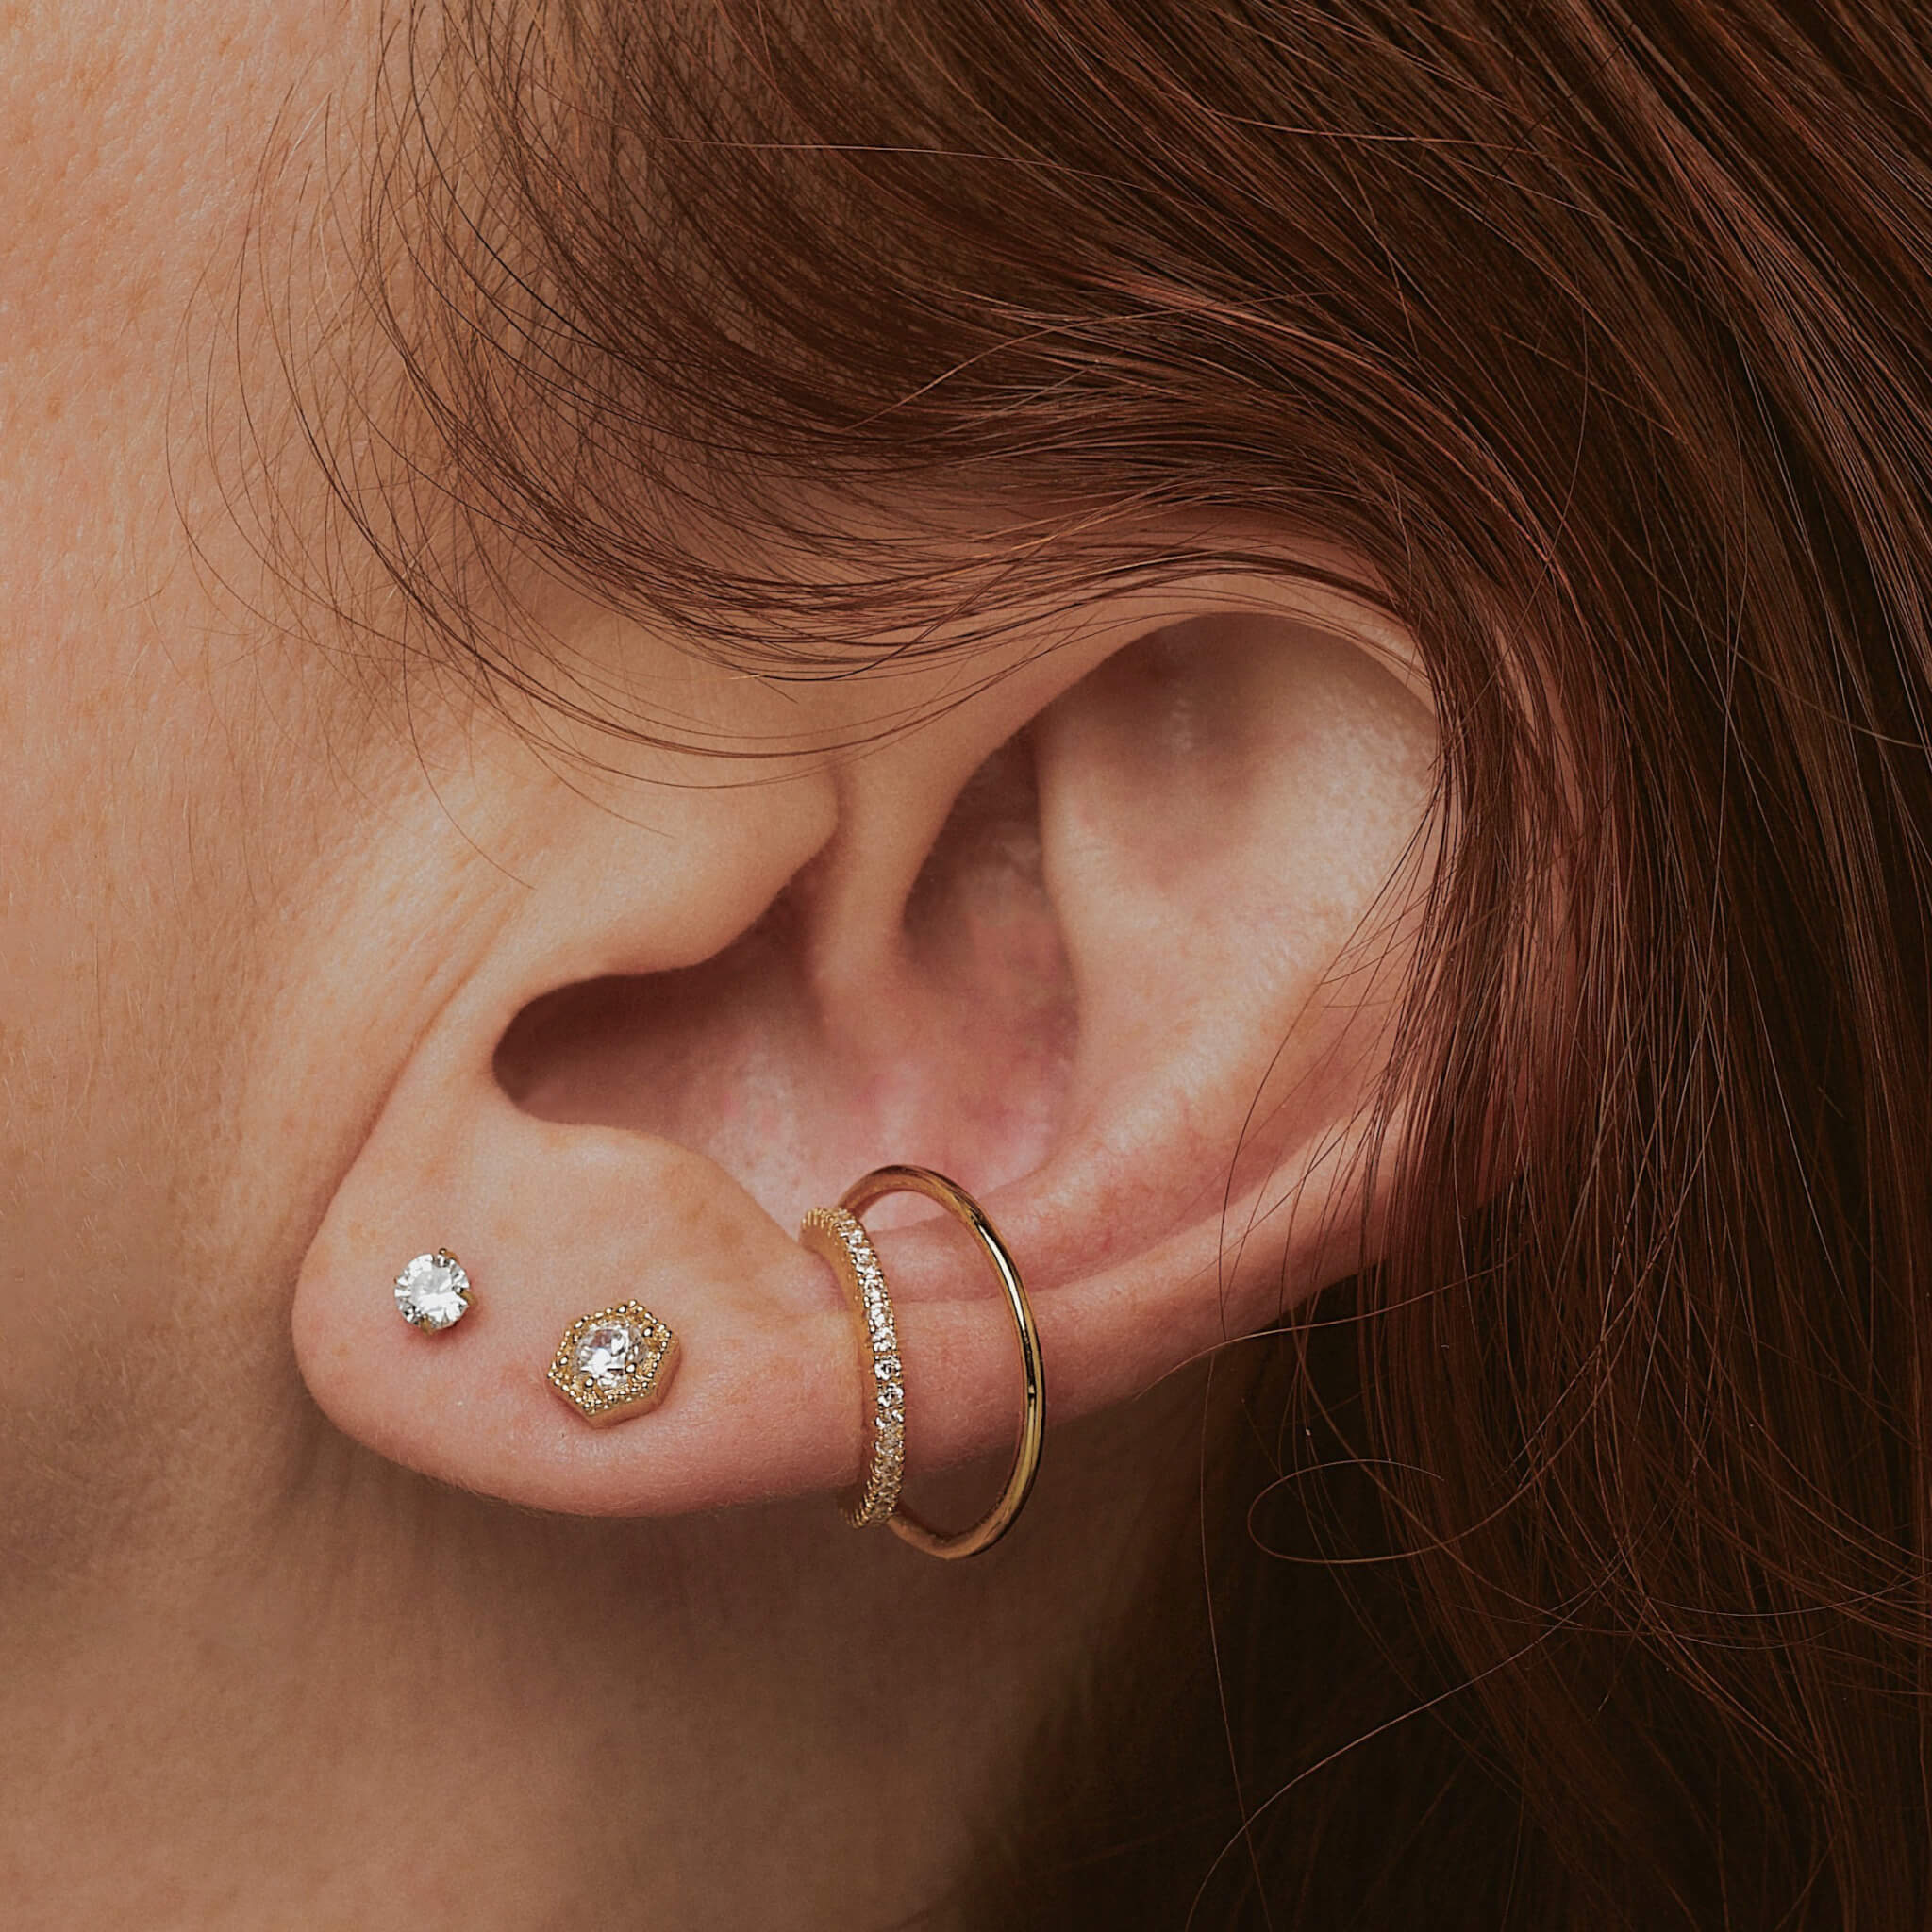 diy earring jewelry ear stud back